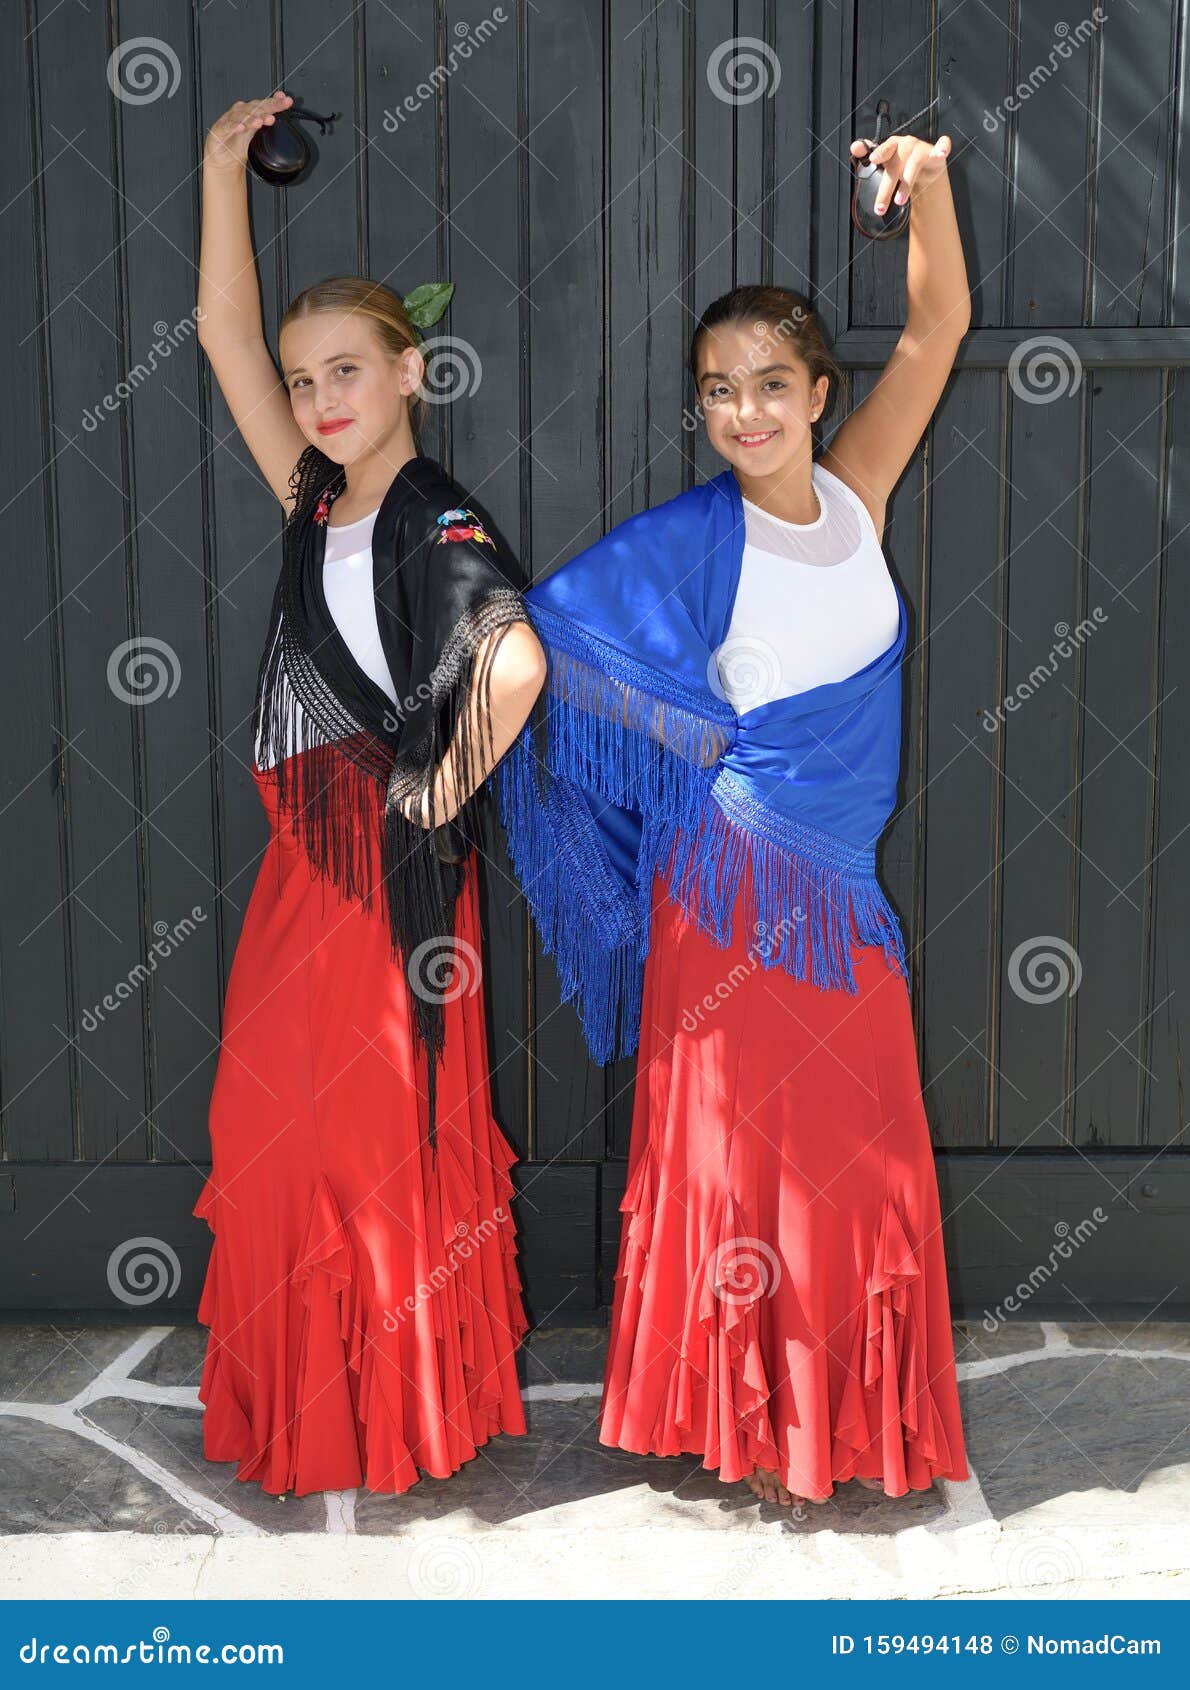 éxito Caliza espíritu Retrato Vertical De Dos NiÃ±as Bailando Flamenco. EstÃ¡n En Una PosiciÃ³n  SimÃ©trica Con El PaÃ±uelo TÃpico Y El Foto de archivo - Imagen de hembra,  artista: 159494148